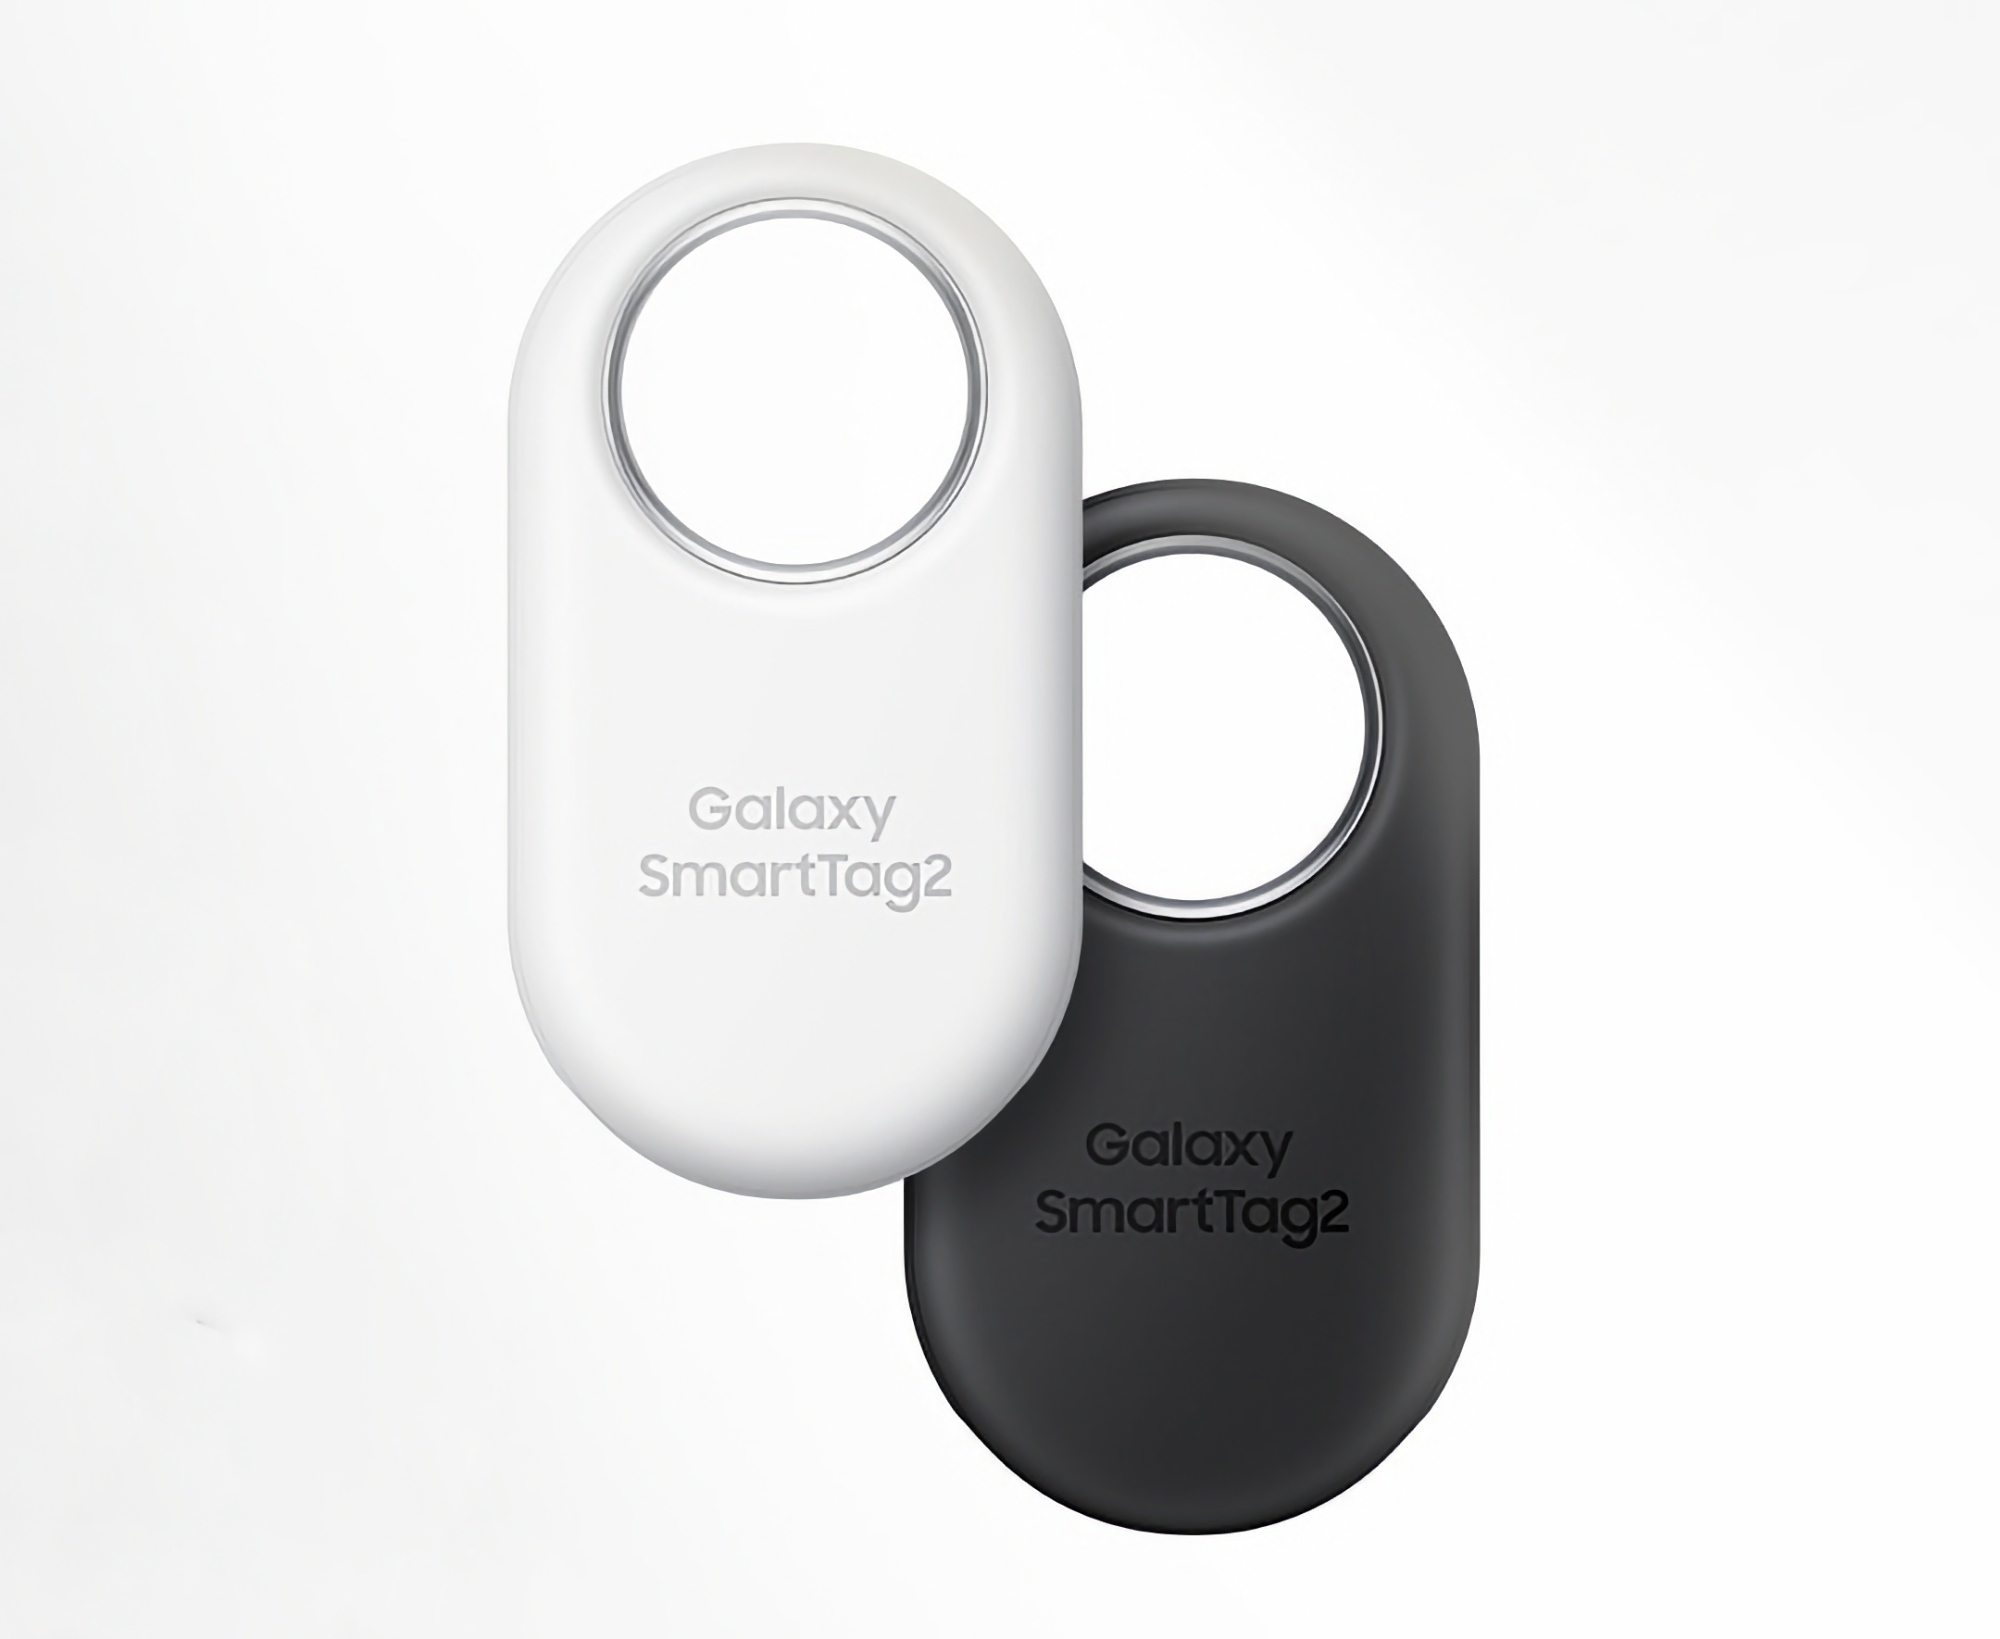 Le Samsung Galaxy SmartTag 2 peut être acheté sur Amazon à un prix promotionnel